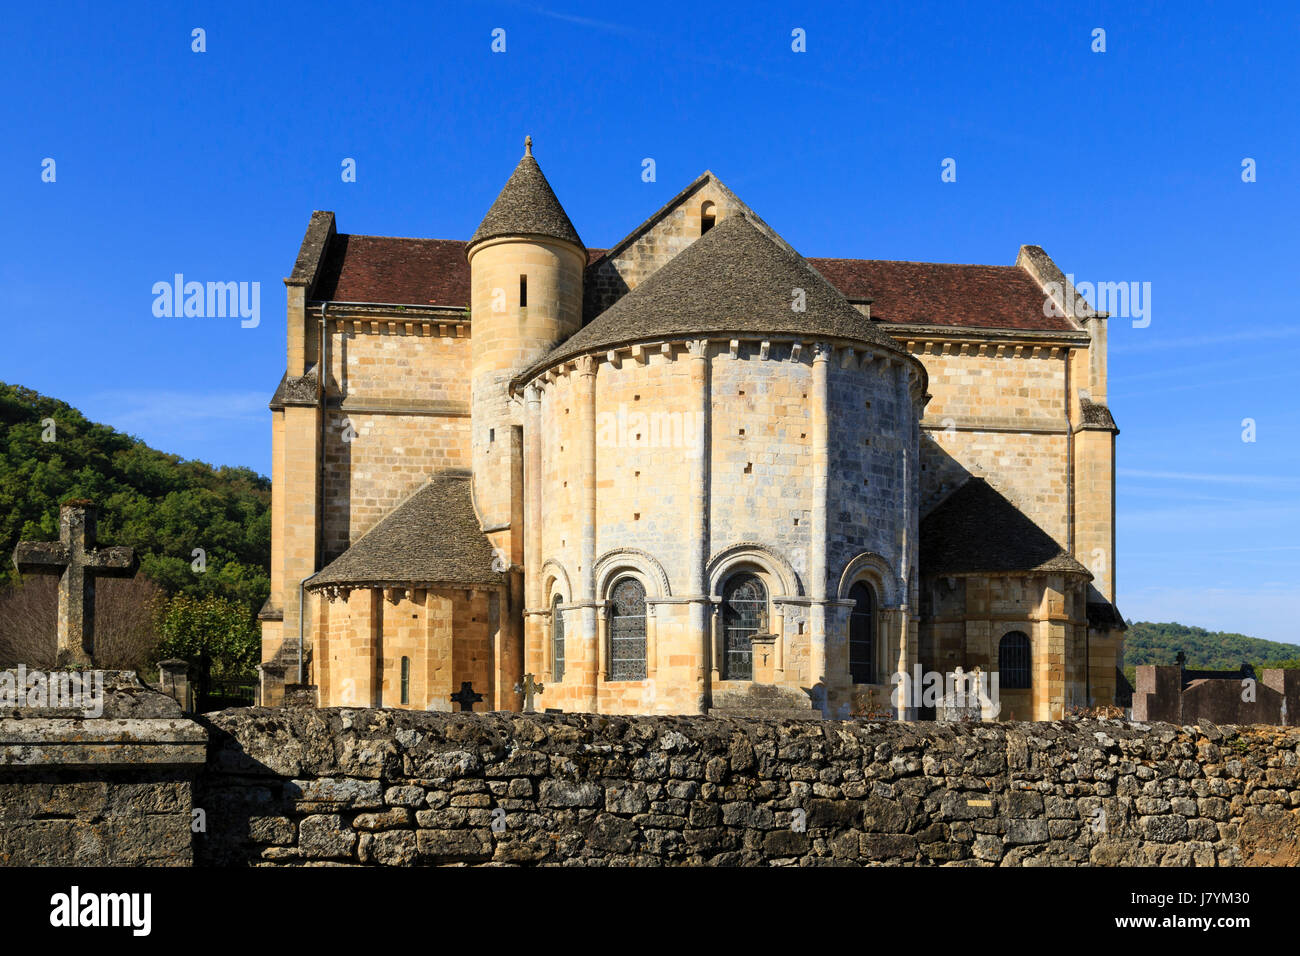 France, Dordogne, Cenac et Saint Julien, Notre Dame de la Nativite church Stock Photo